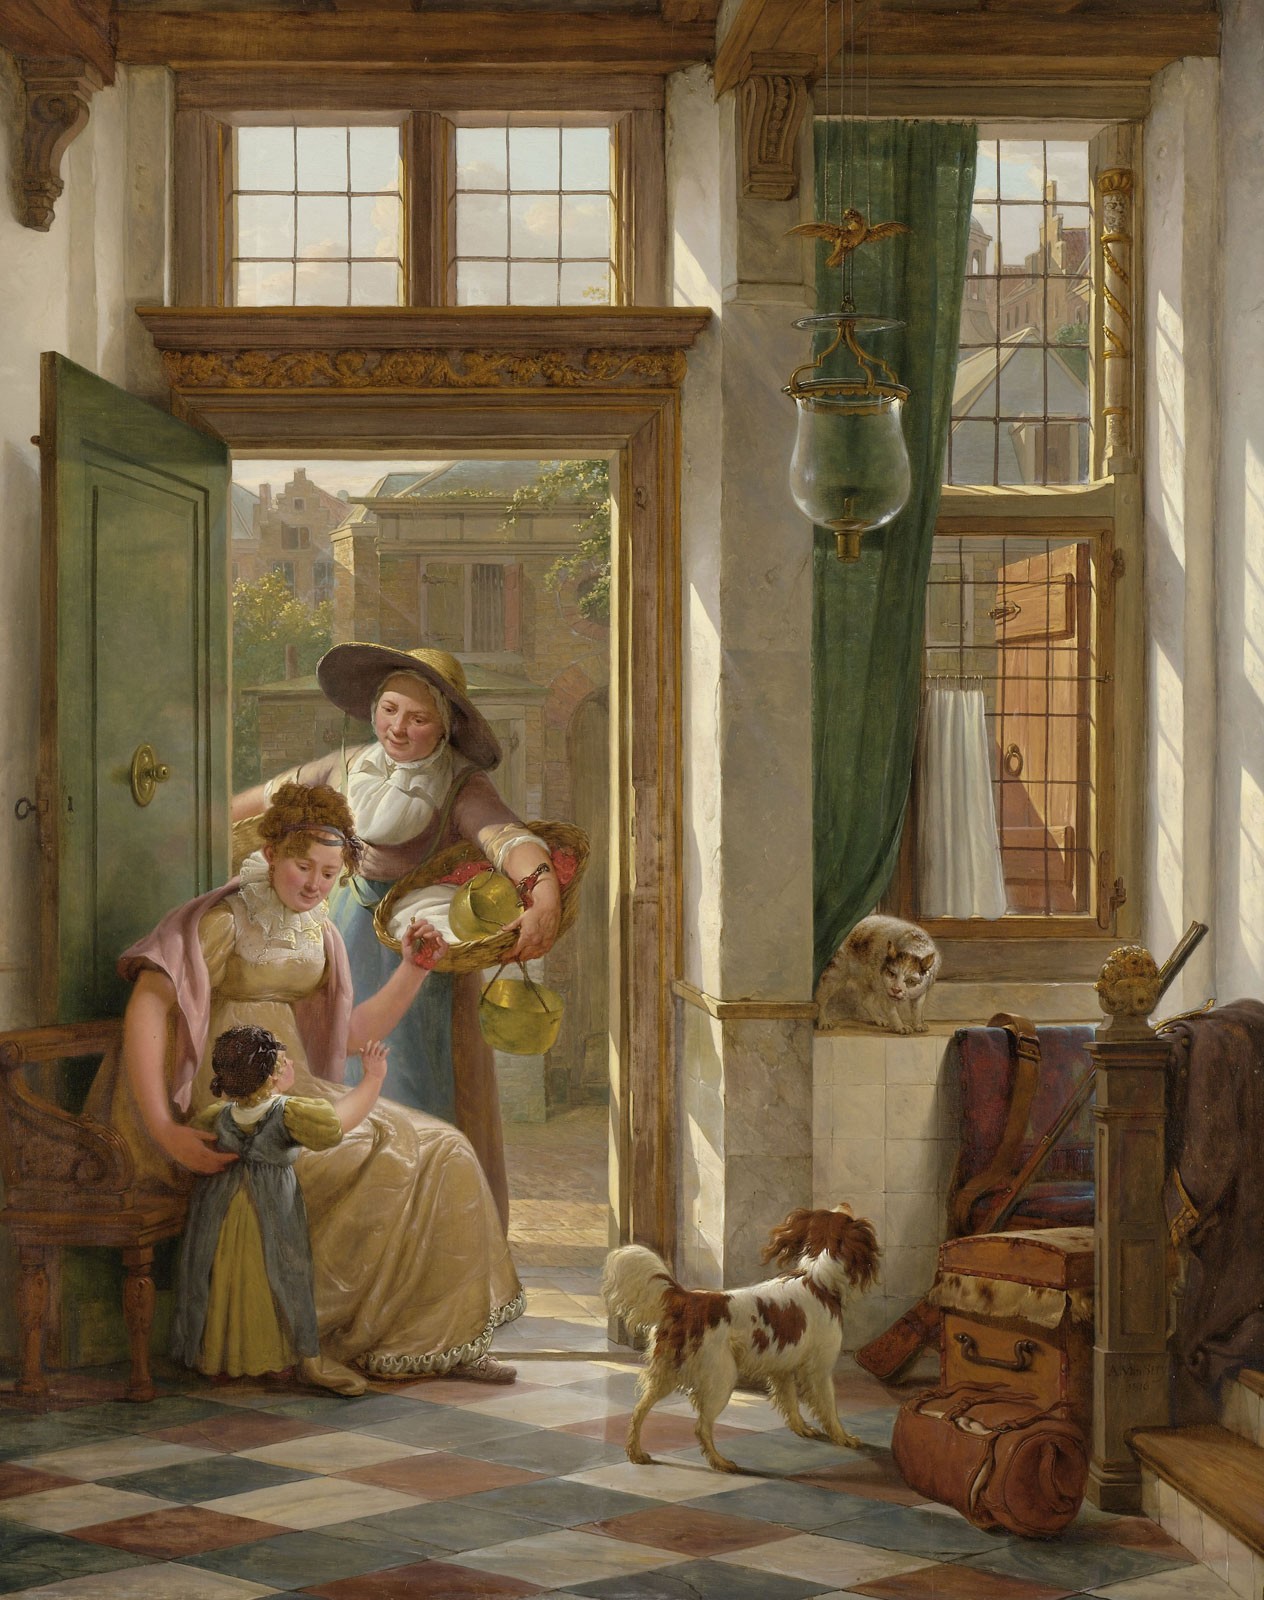 The Peddler, c.1816, Oil on Panel